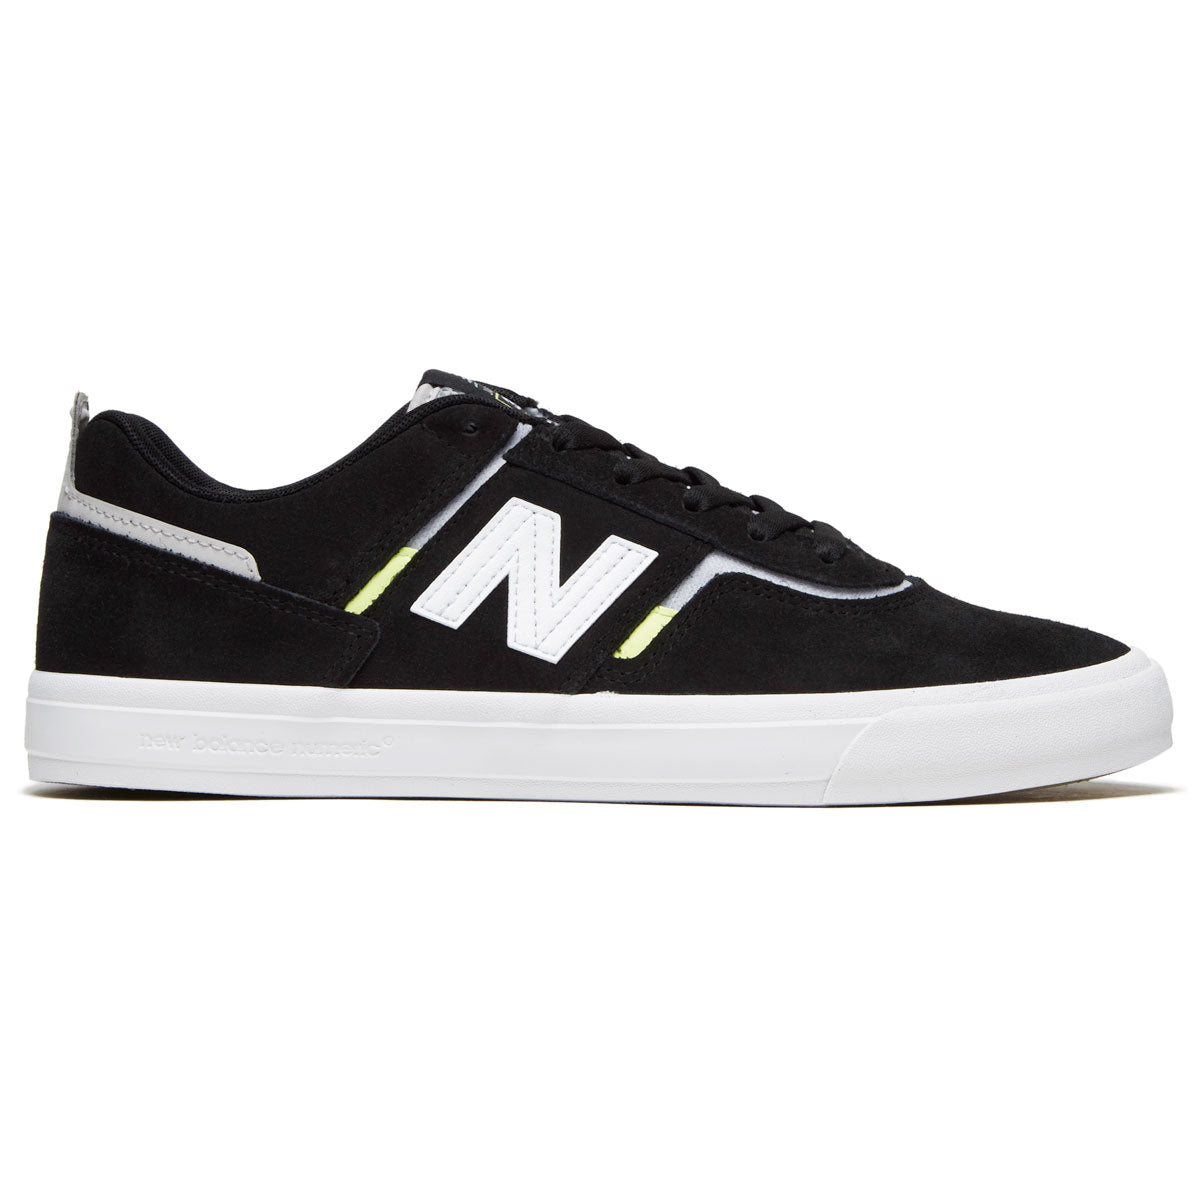 New Balance 306 Foy Shoes - Black/White image 1